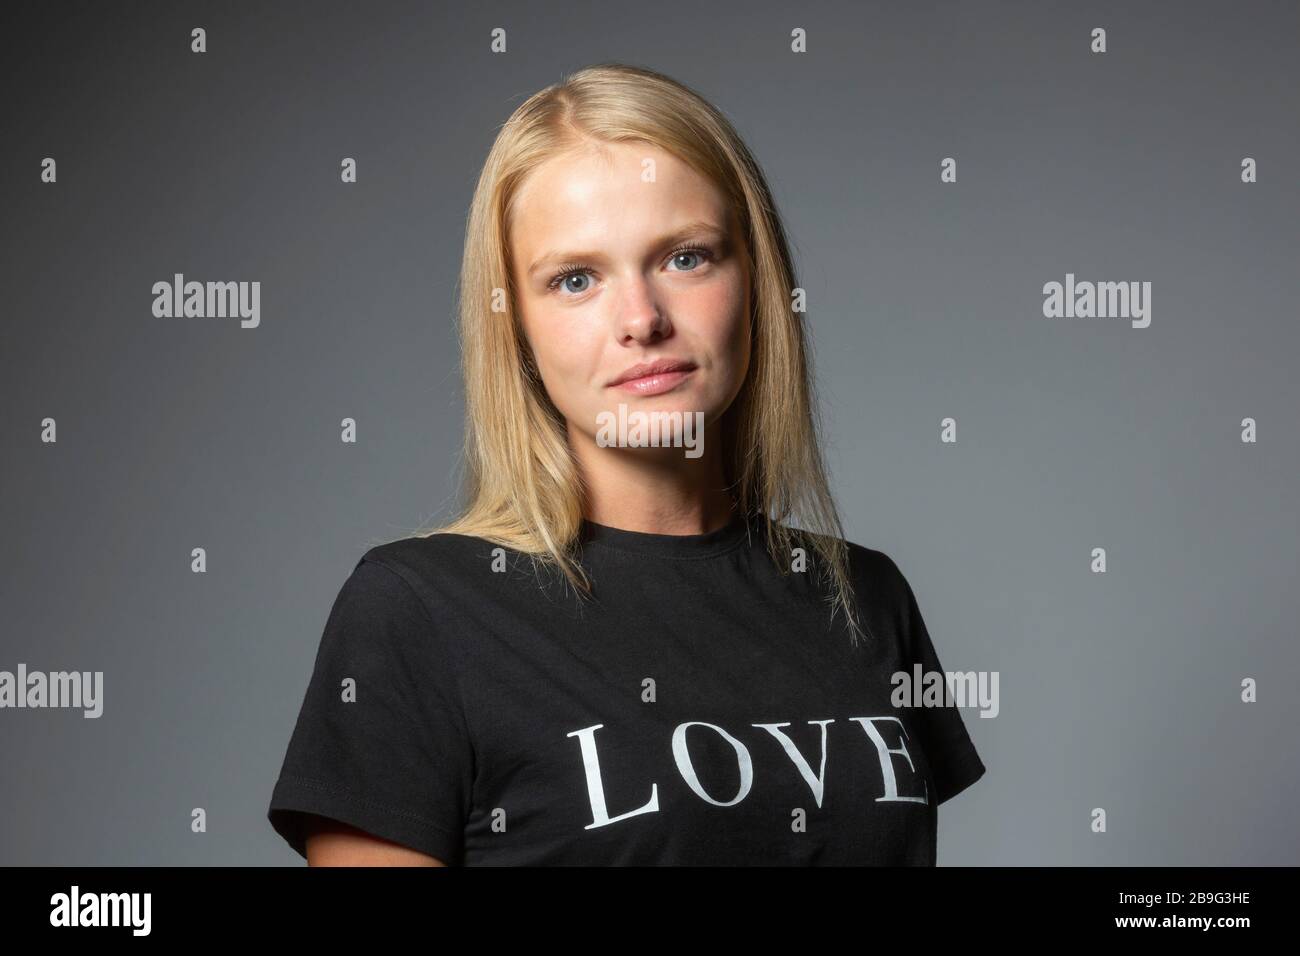 Portrait une jeune femme confiante dans un t-shirt d'amour sur fond gris Banque D'Images